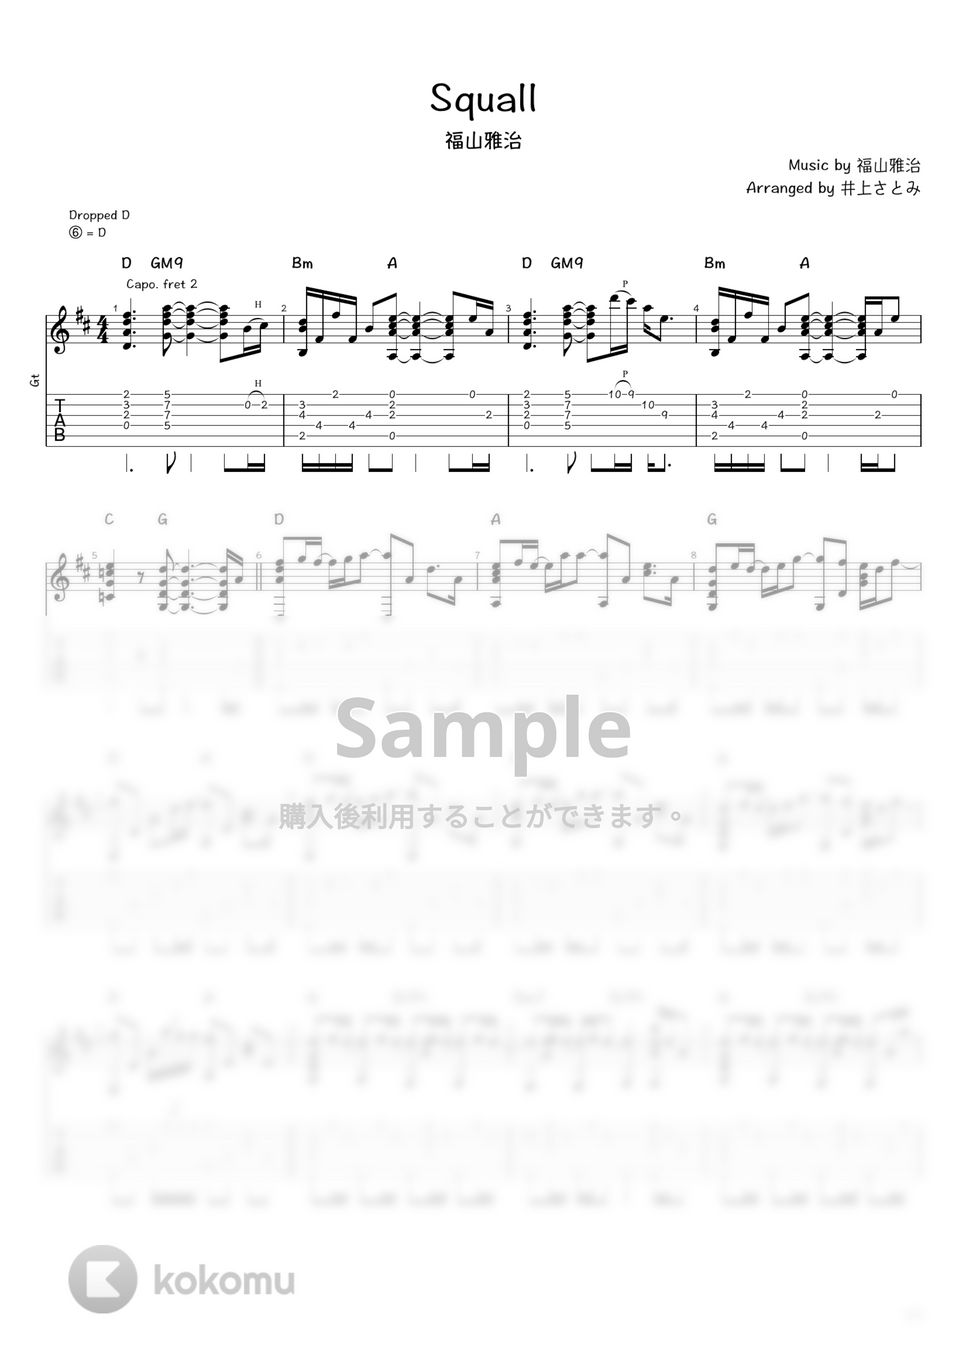 福山雅治 - Squall (ソロギター / タブ譜) by 井上さとみ